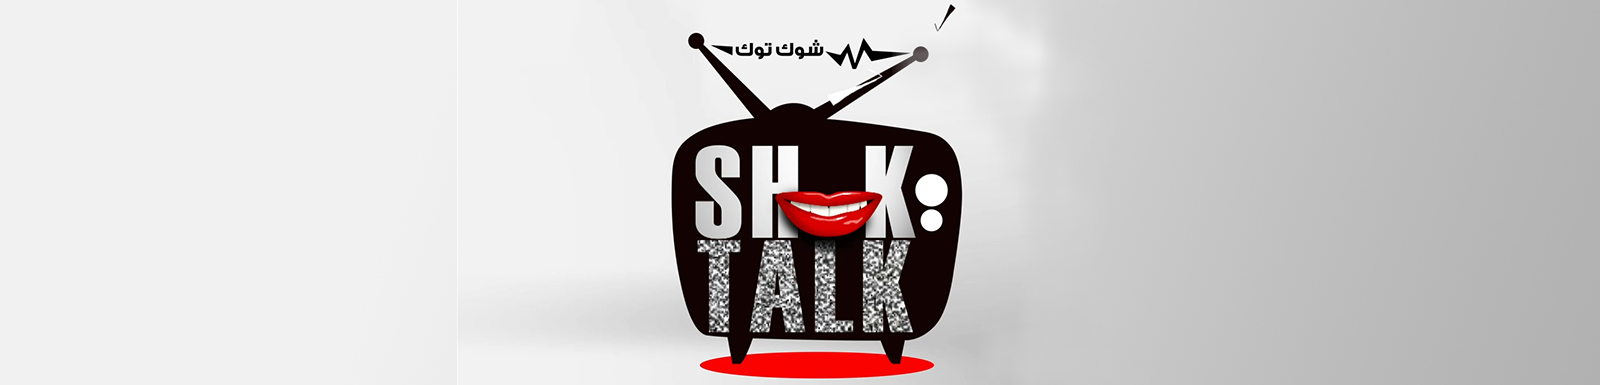 تحميل برنامج شوك توك الحلقة 17 كاملة MBC shahid شاهد نت